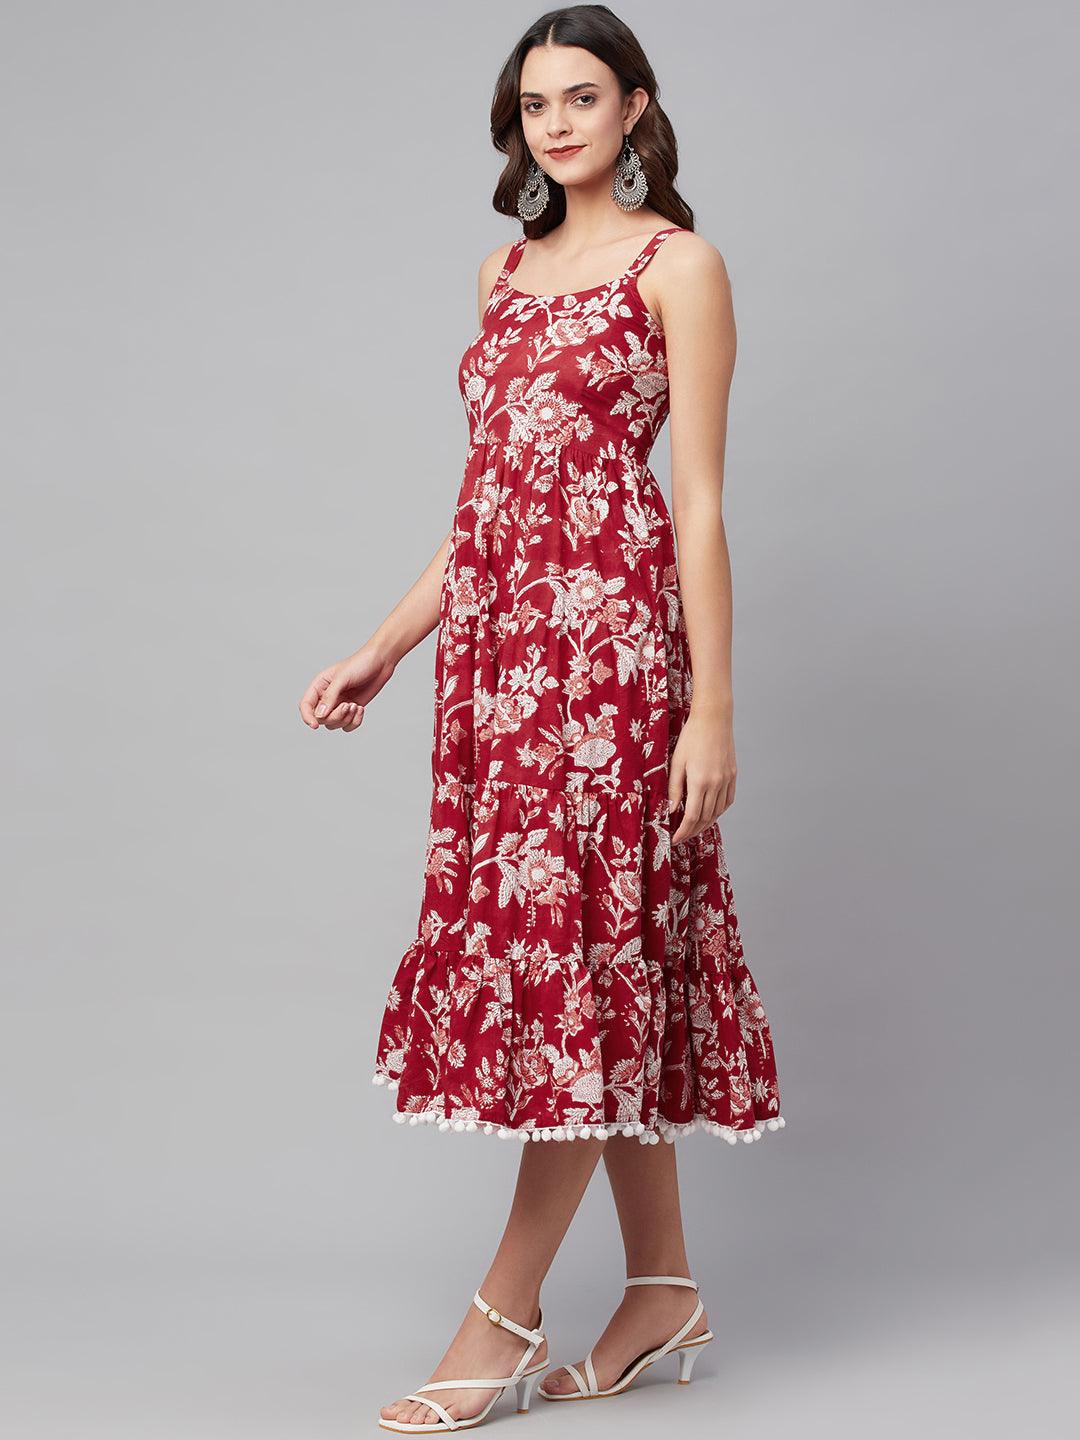 Divena Red Floral Printed Shoulder Strap Long dress - divena world